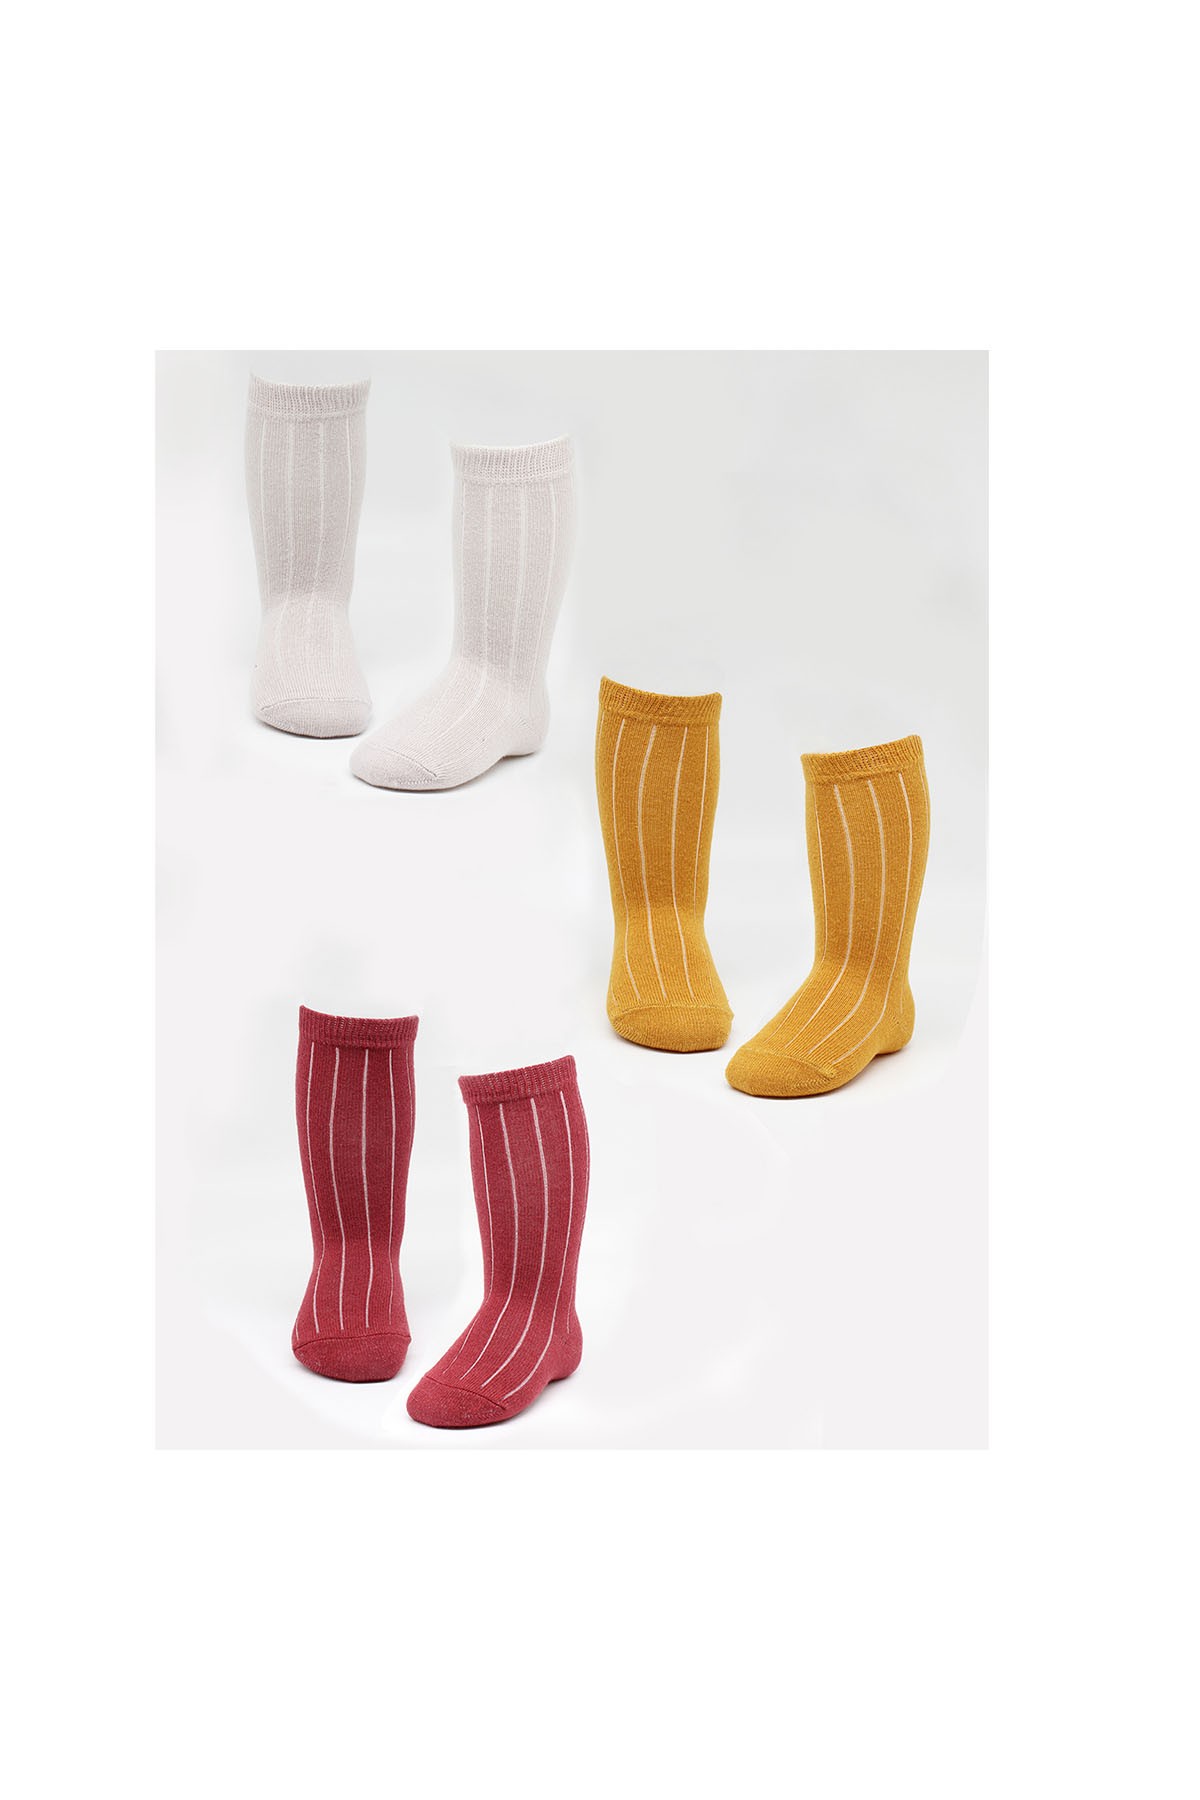 Bistyle 3'lü Dizaltı Bebek Çorabı Karamel Çok Renkli